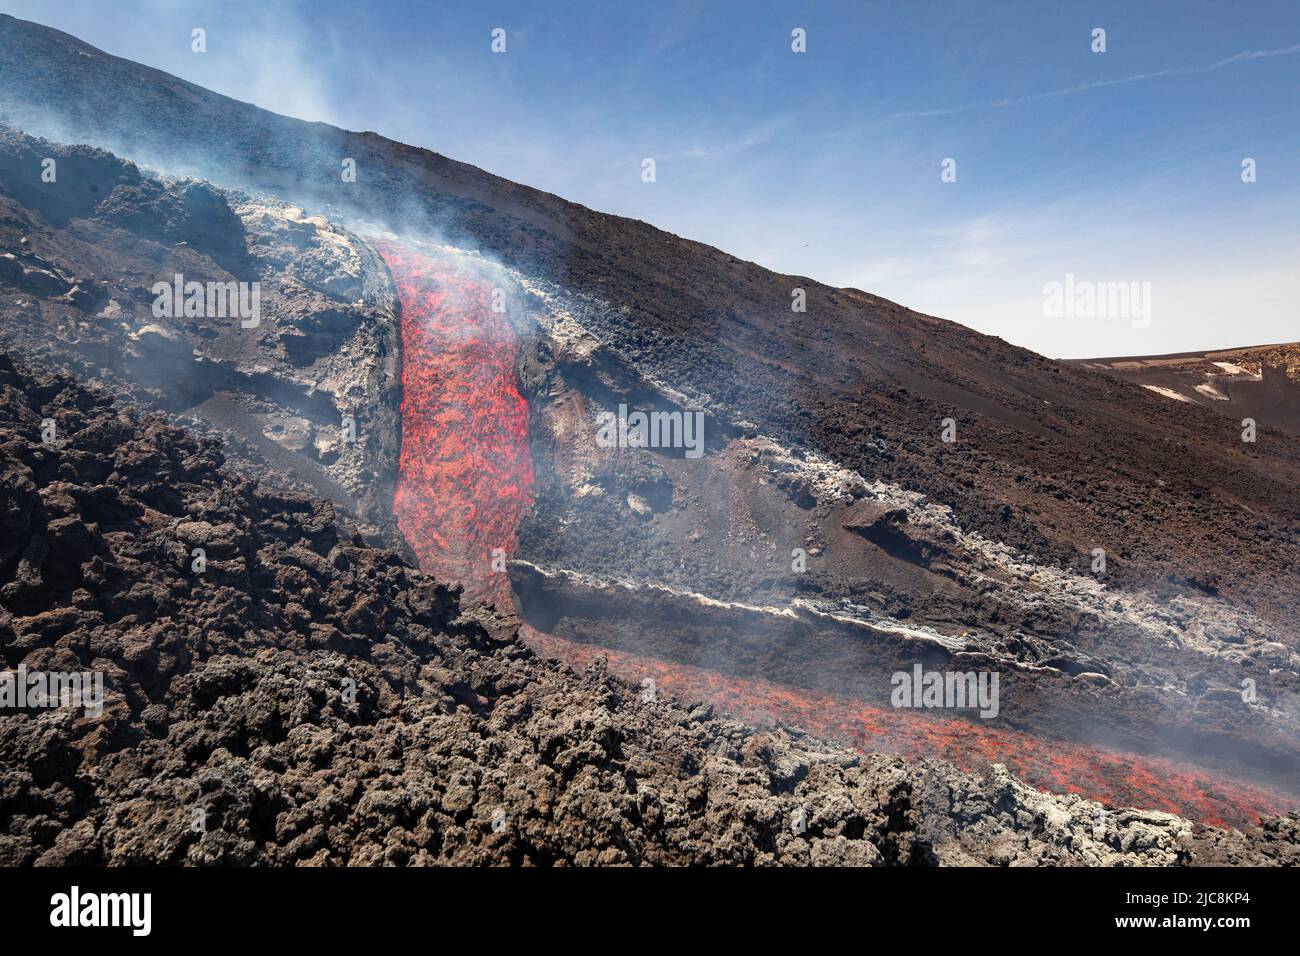 Flusso di lava etna: La caduta di lava sul vulcano della Sicilia nella Valle del Bove con il canale del fumo e del flusso lavico Foto Stock